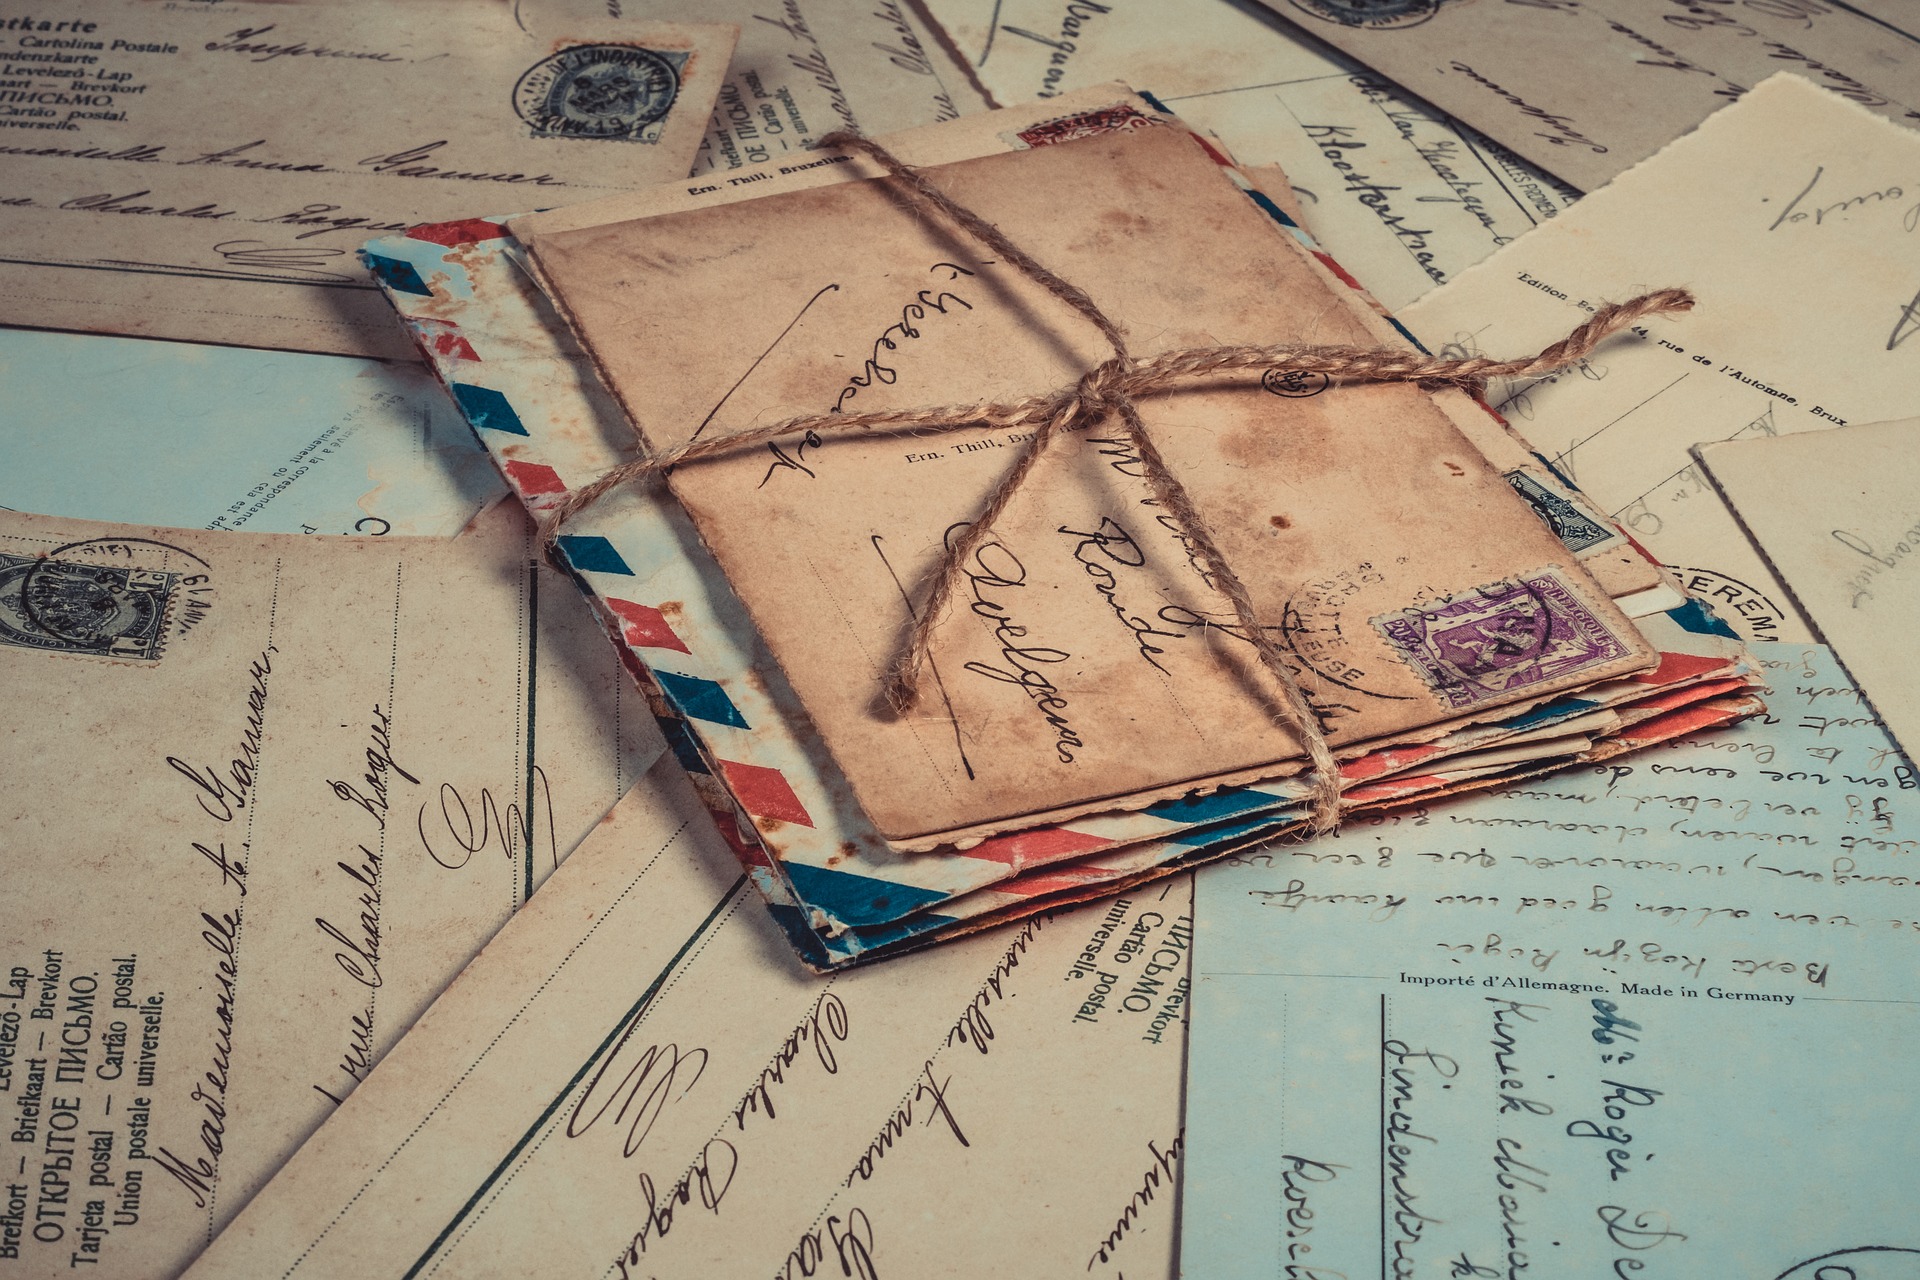 Briefe_Karten_Alt (c) Bild von Ylanite Koppens auf Pixabay